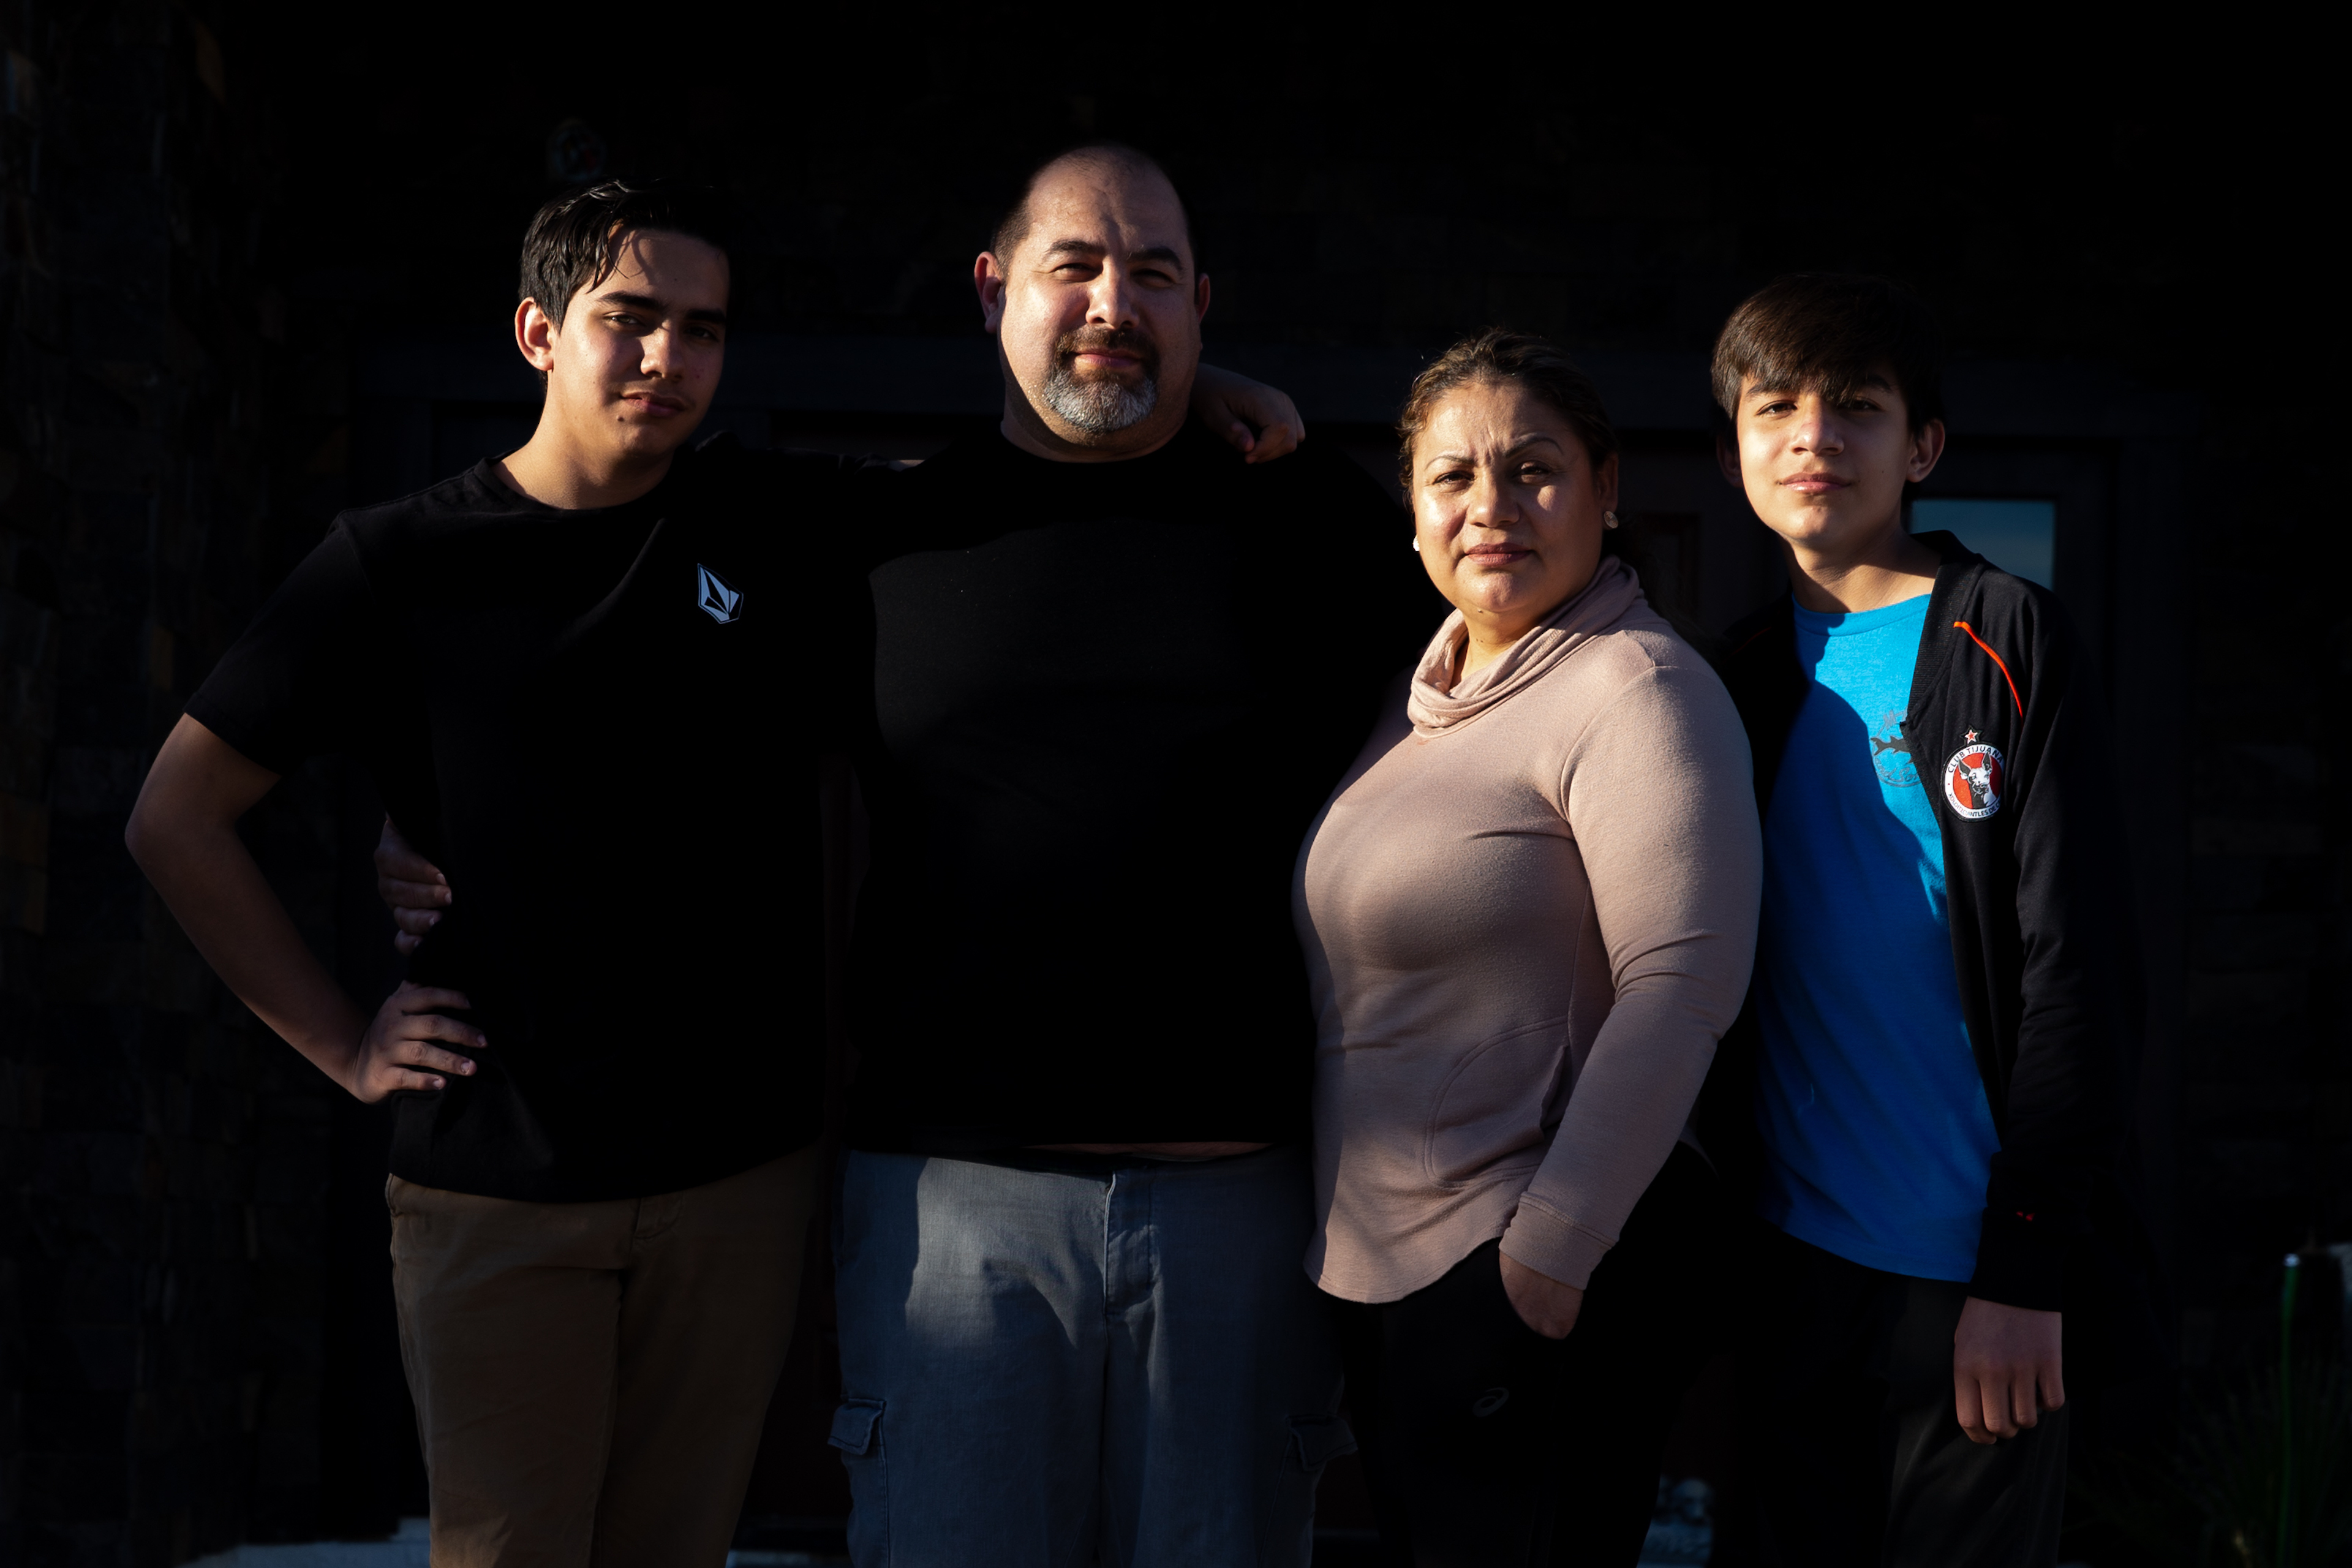 Luego de enfrentar terribles cuentas médicas, familia resolve cruzar la frontera para recibir atención